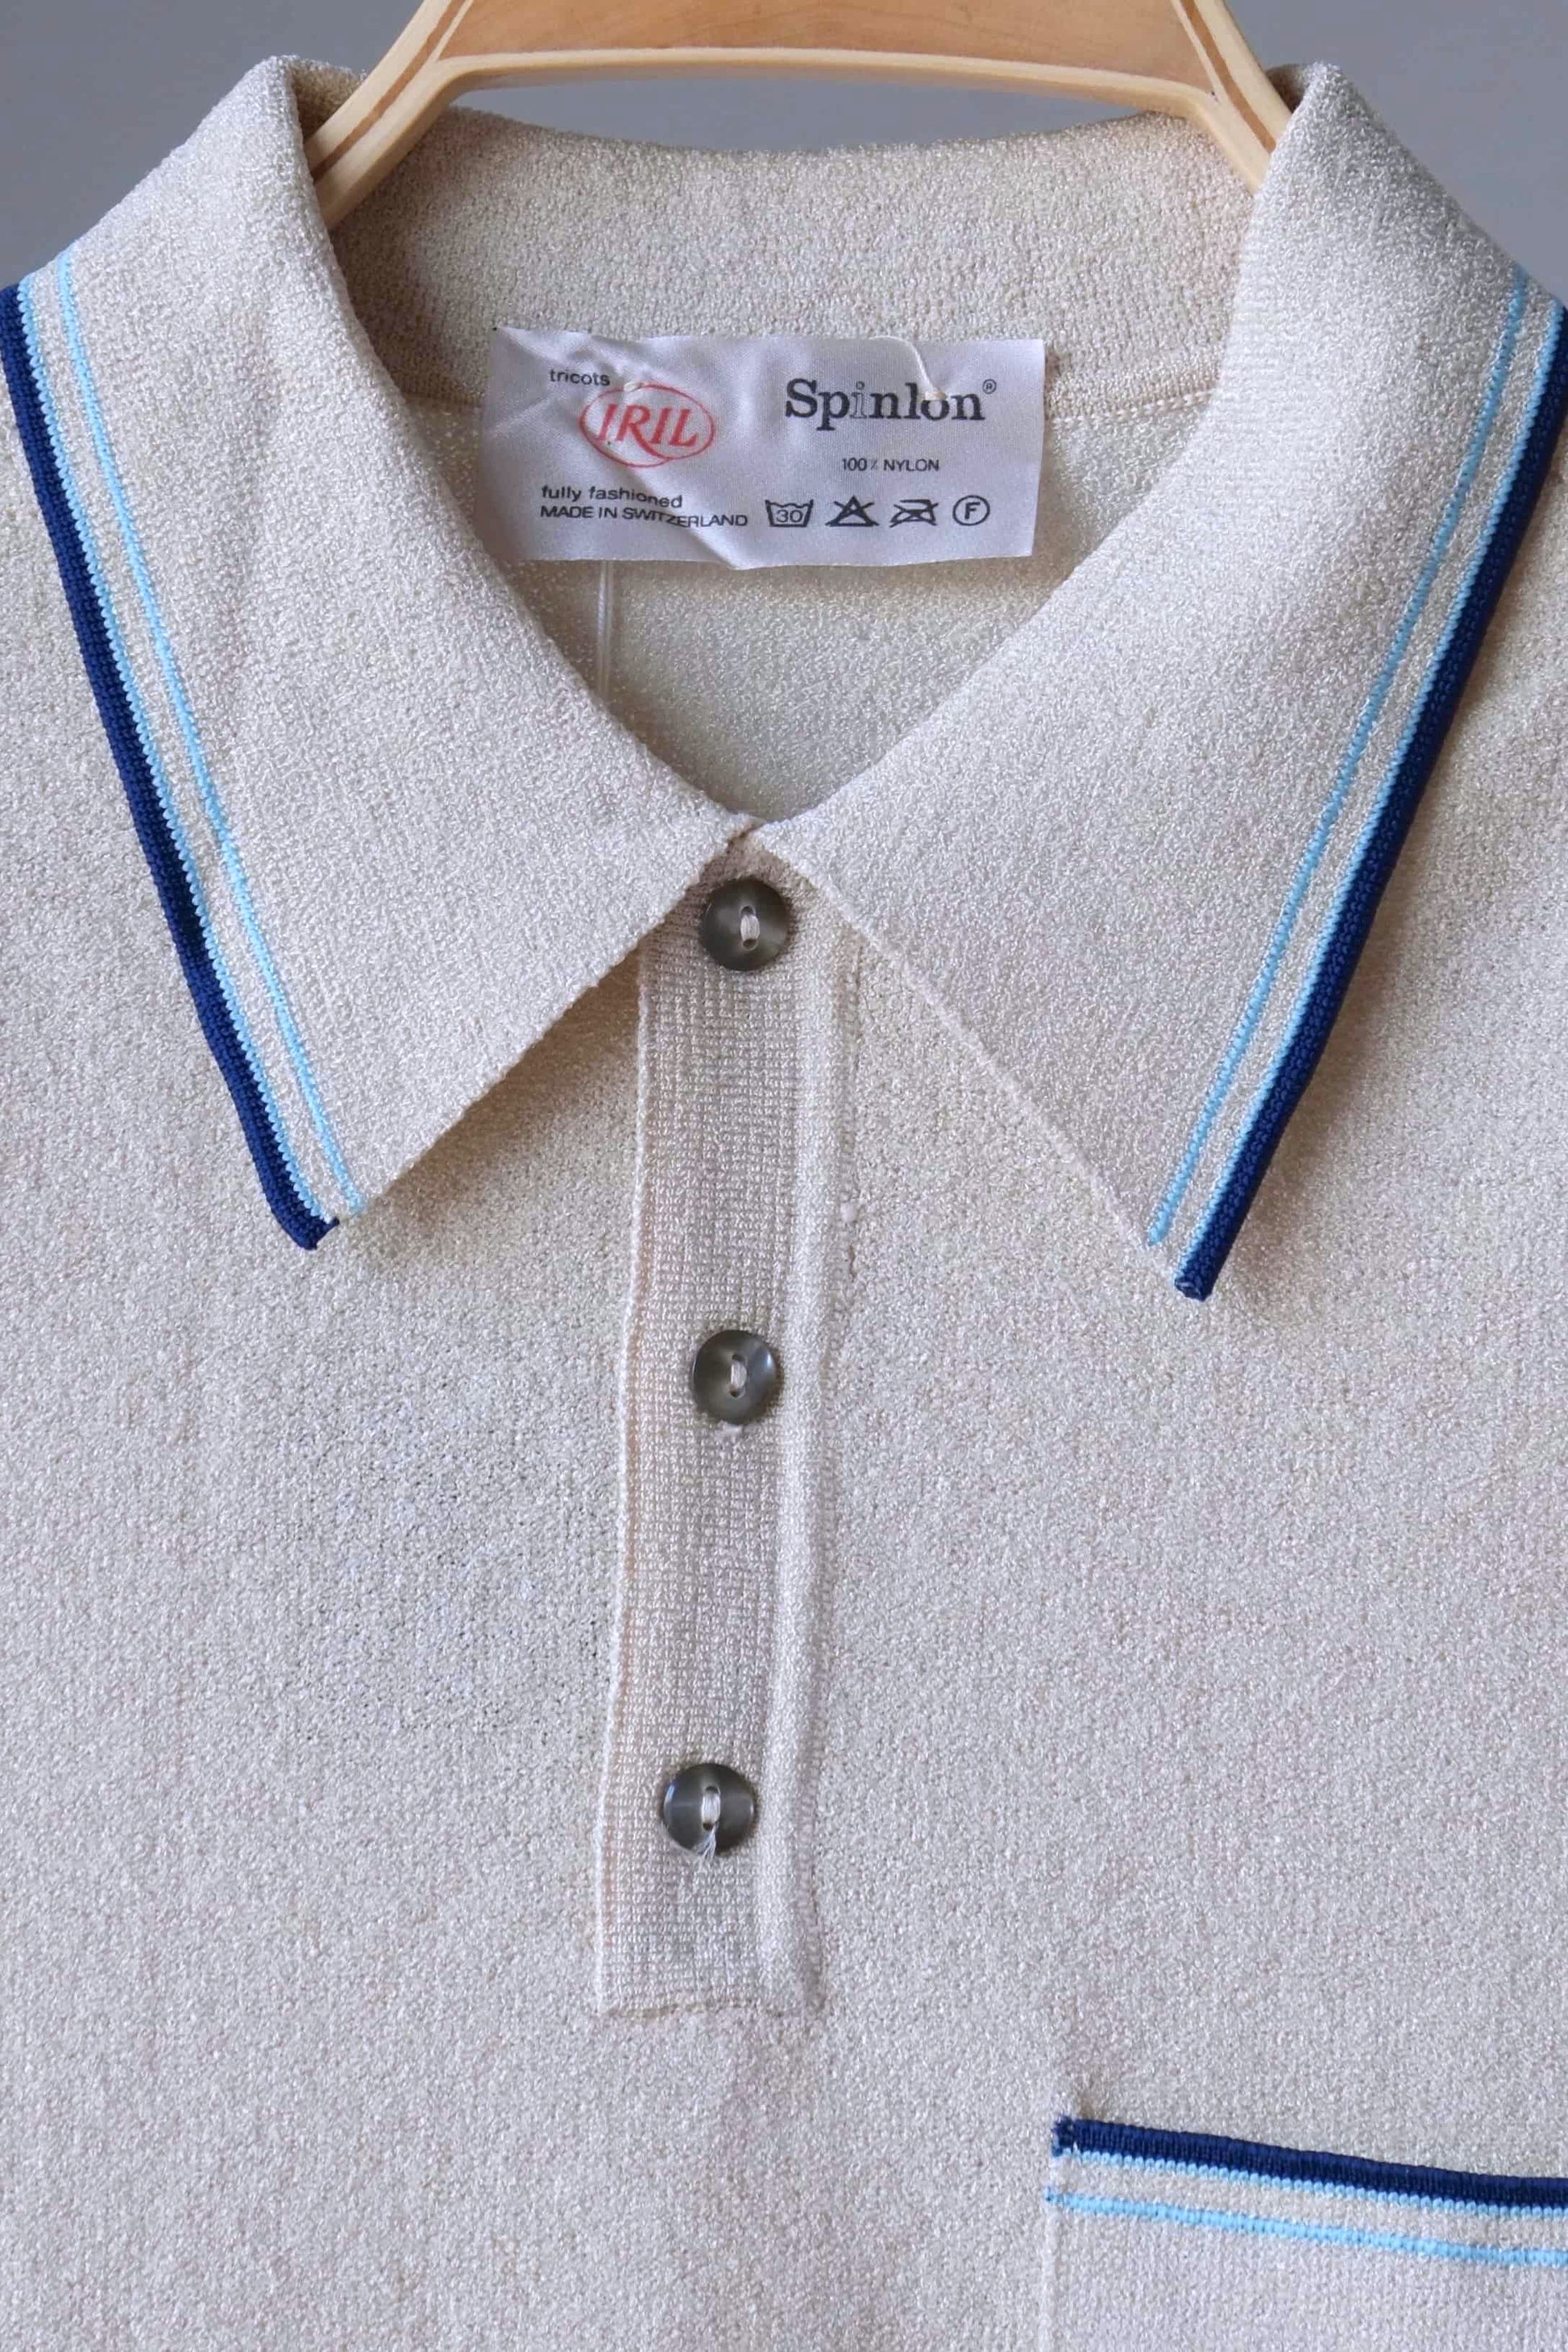 70's Mousse Knit Polo Shirt detail cream color